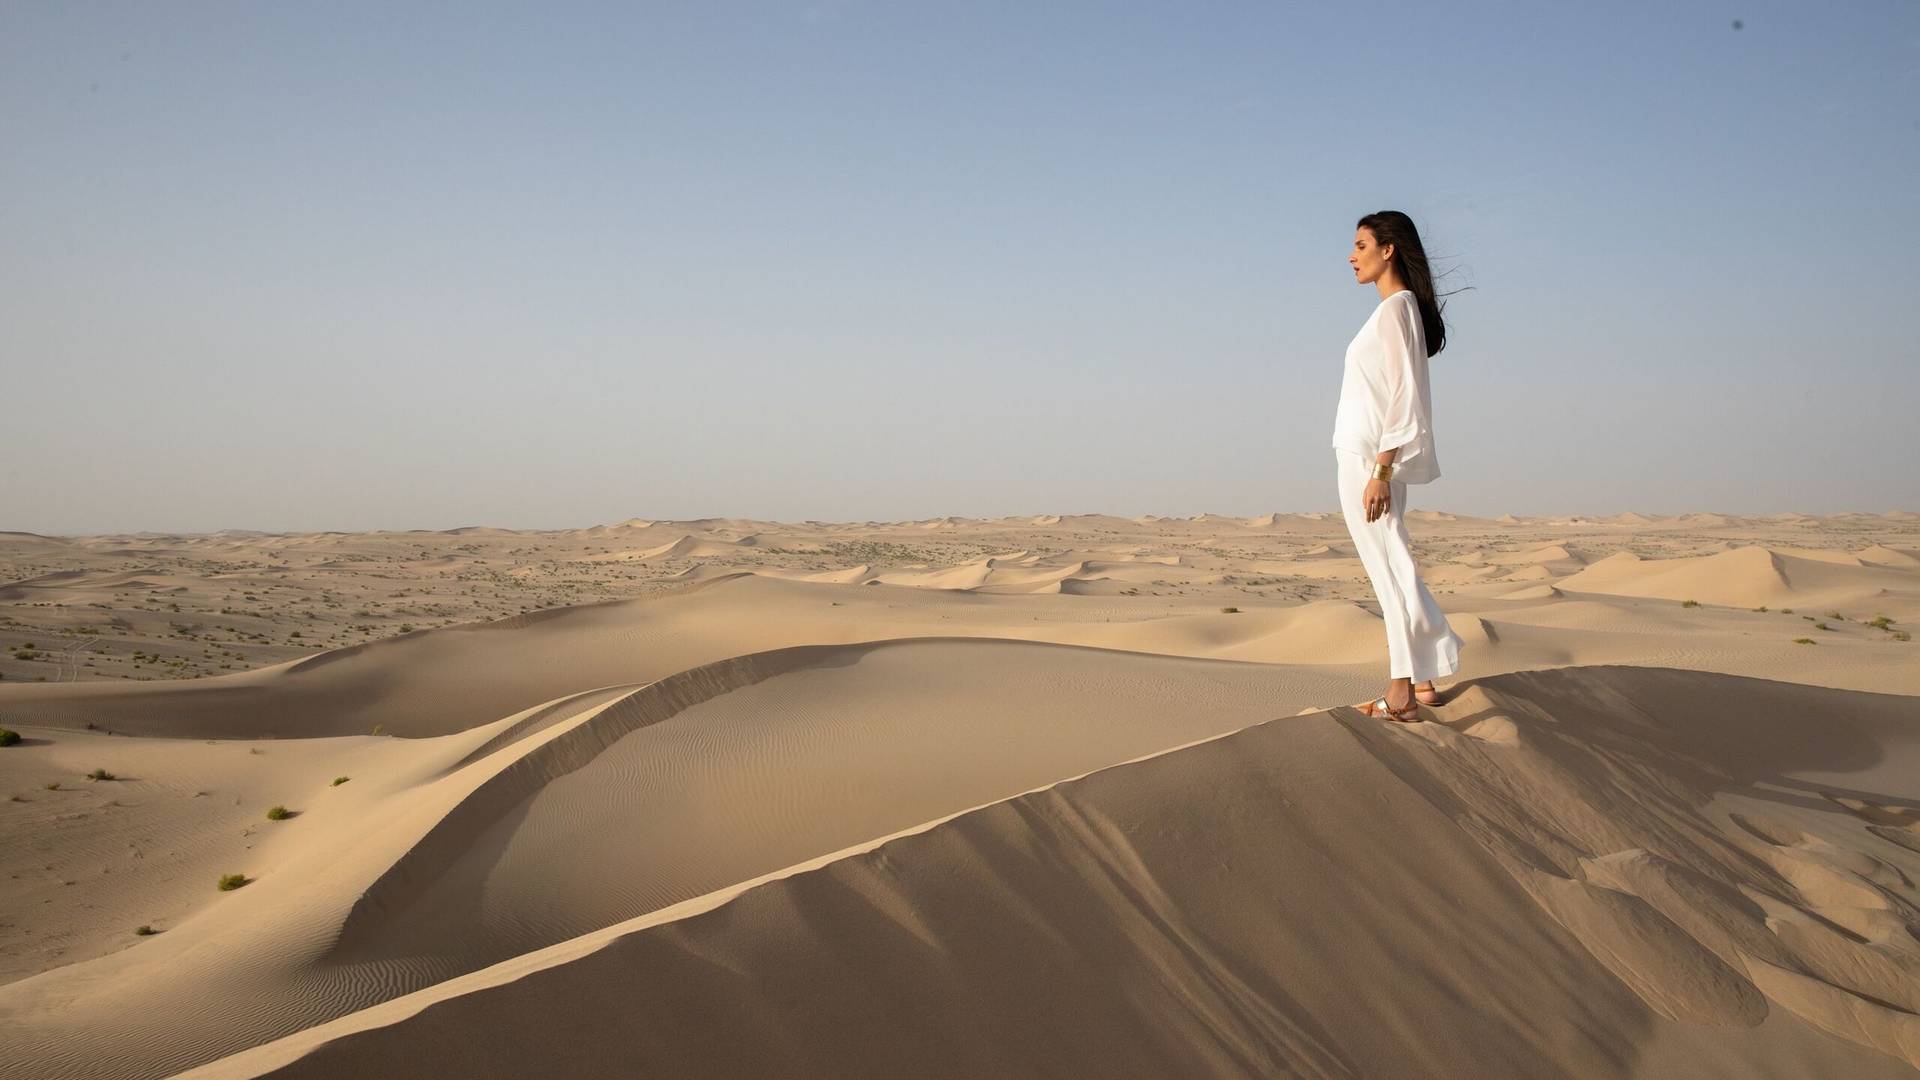 Sand dunes in Dubai's desert